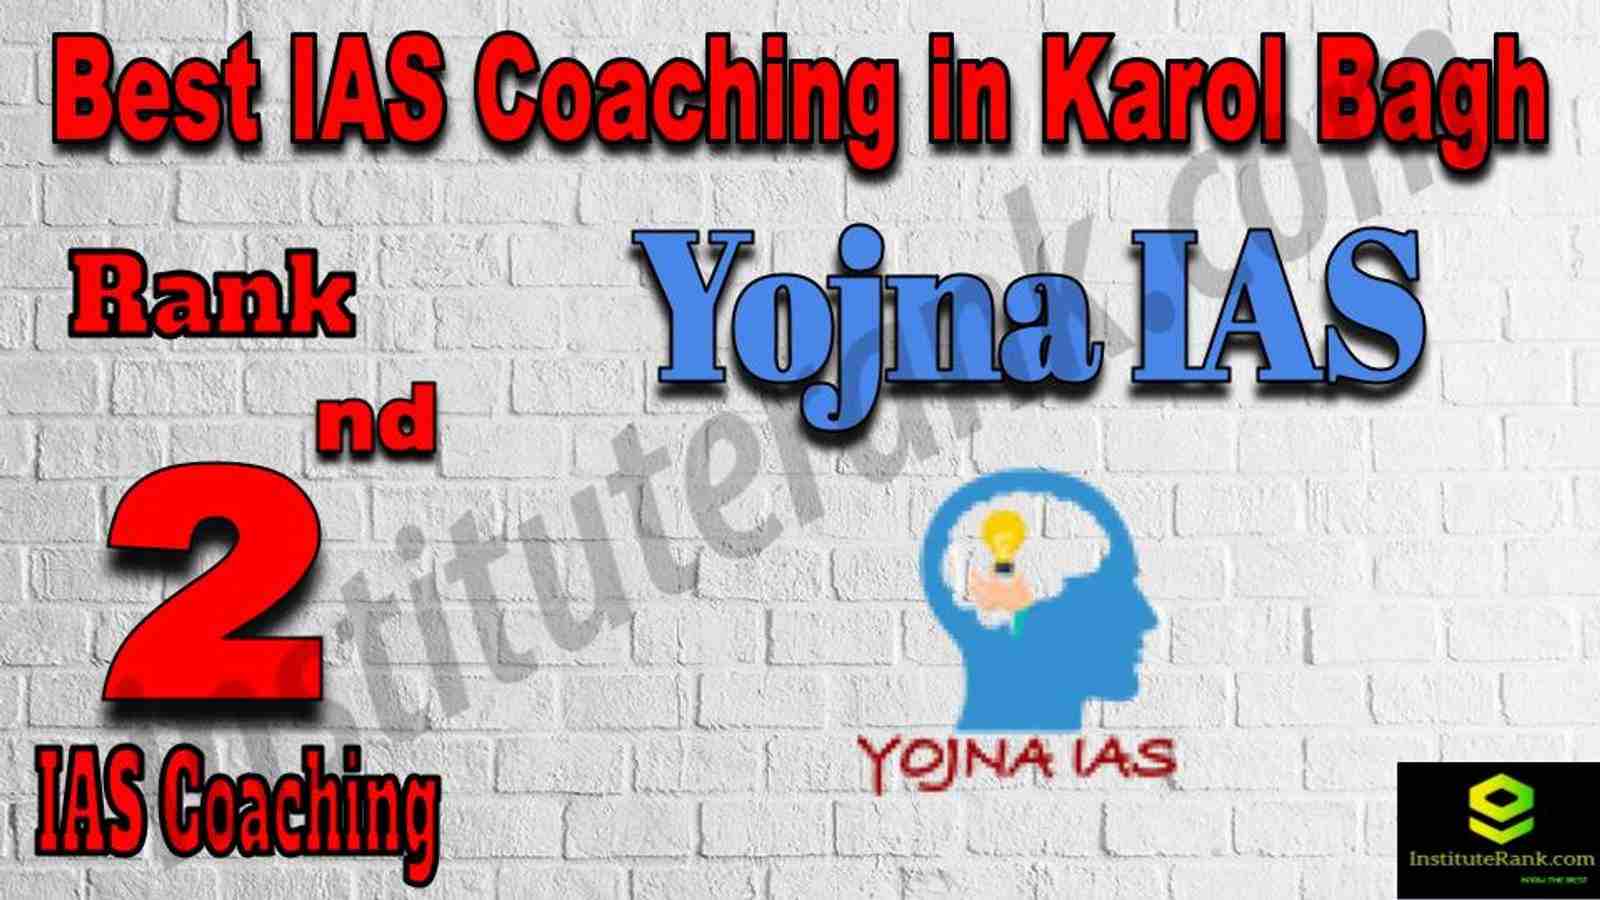 2nd Best IAS Coaching in Karol Bagh